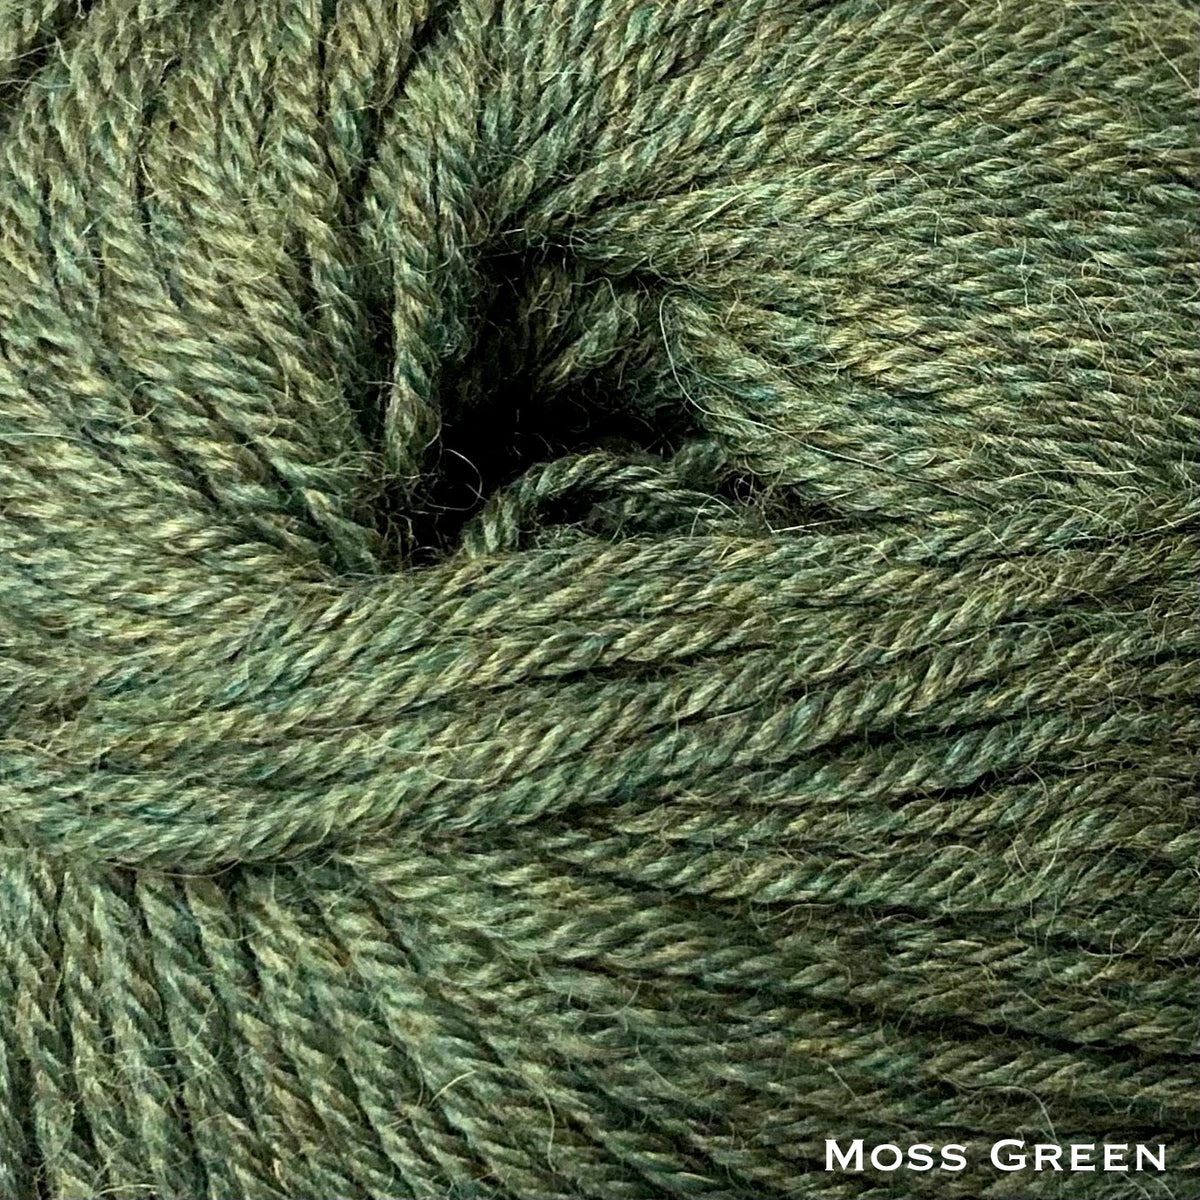 mossy green alpaca yarn